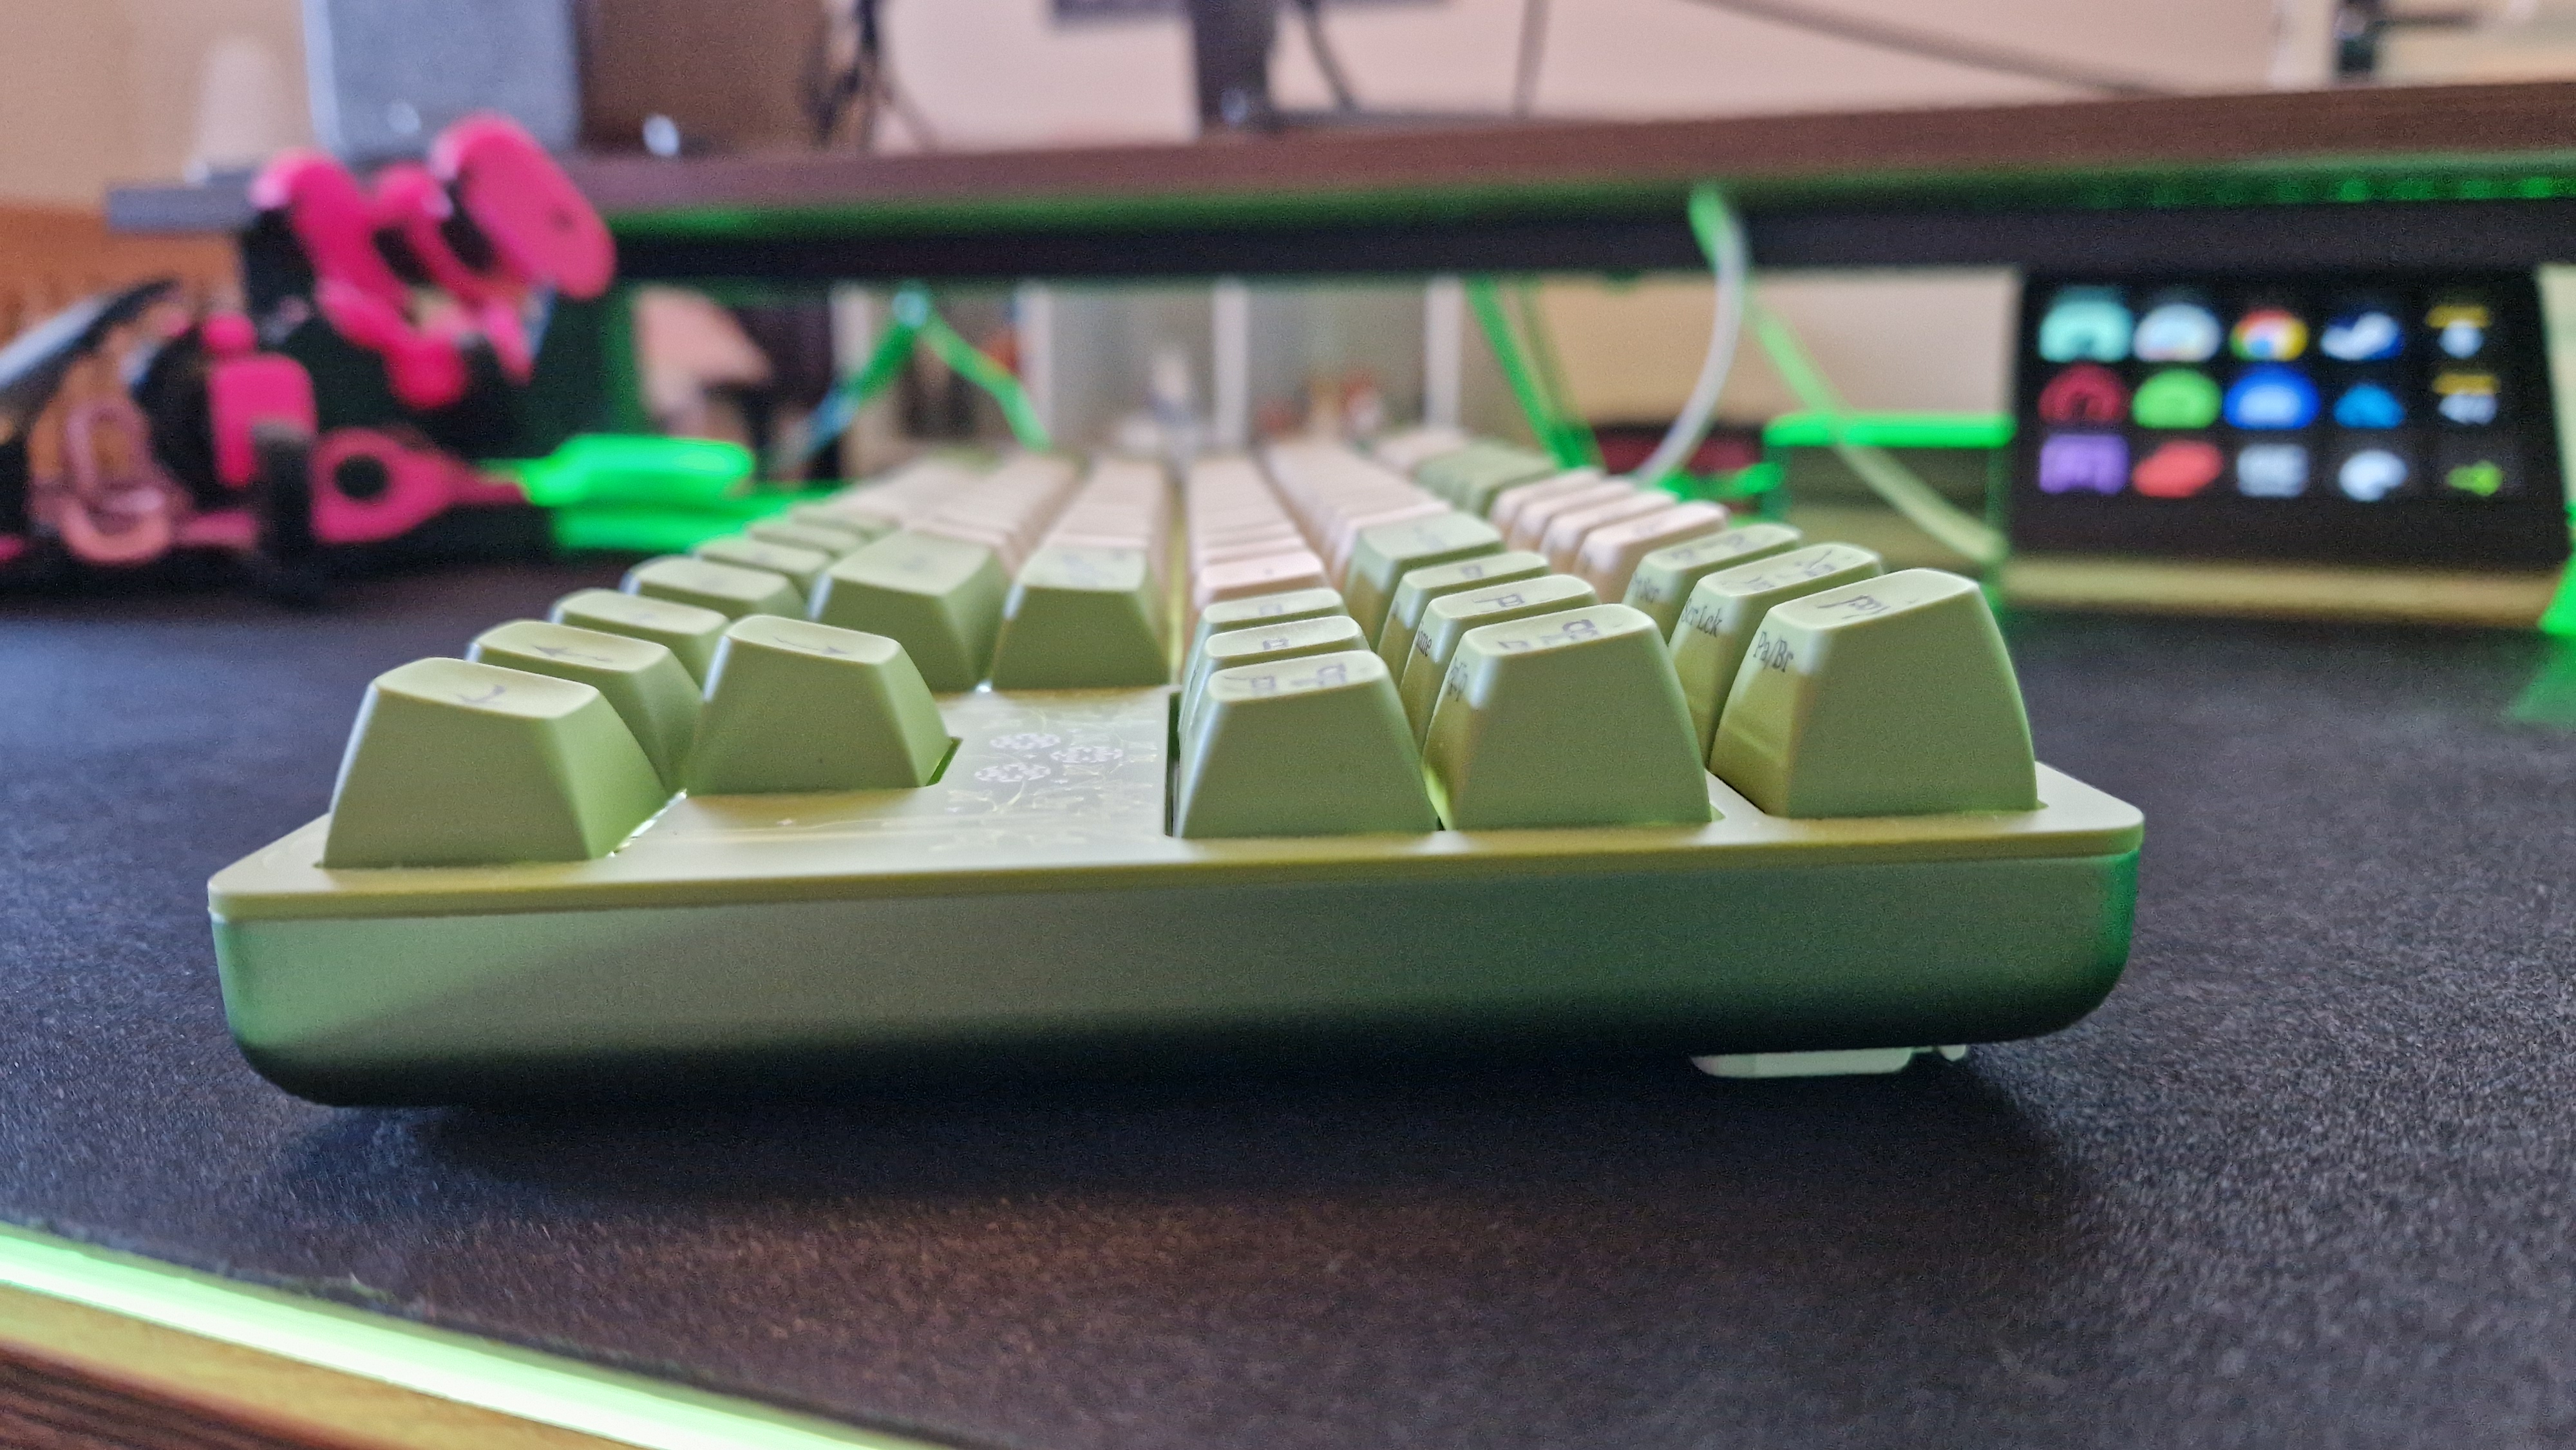 Déposez l'image du clavier elfe + LOTR sur le côté, montrant les courbes et l'ergonomie du clavier.